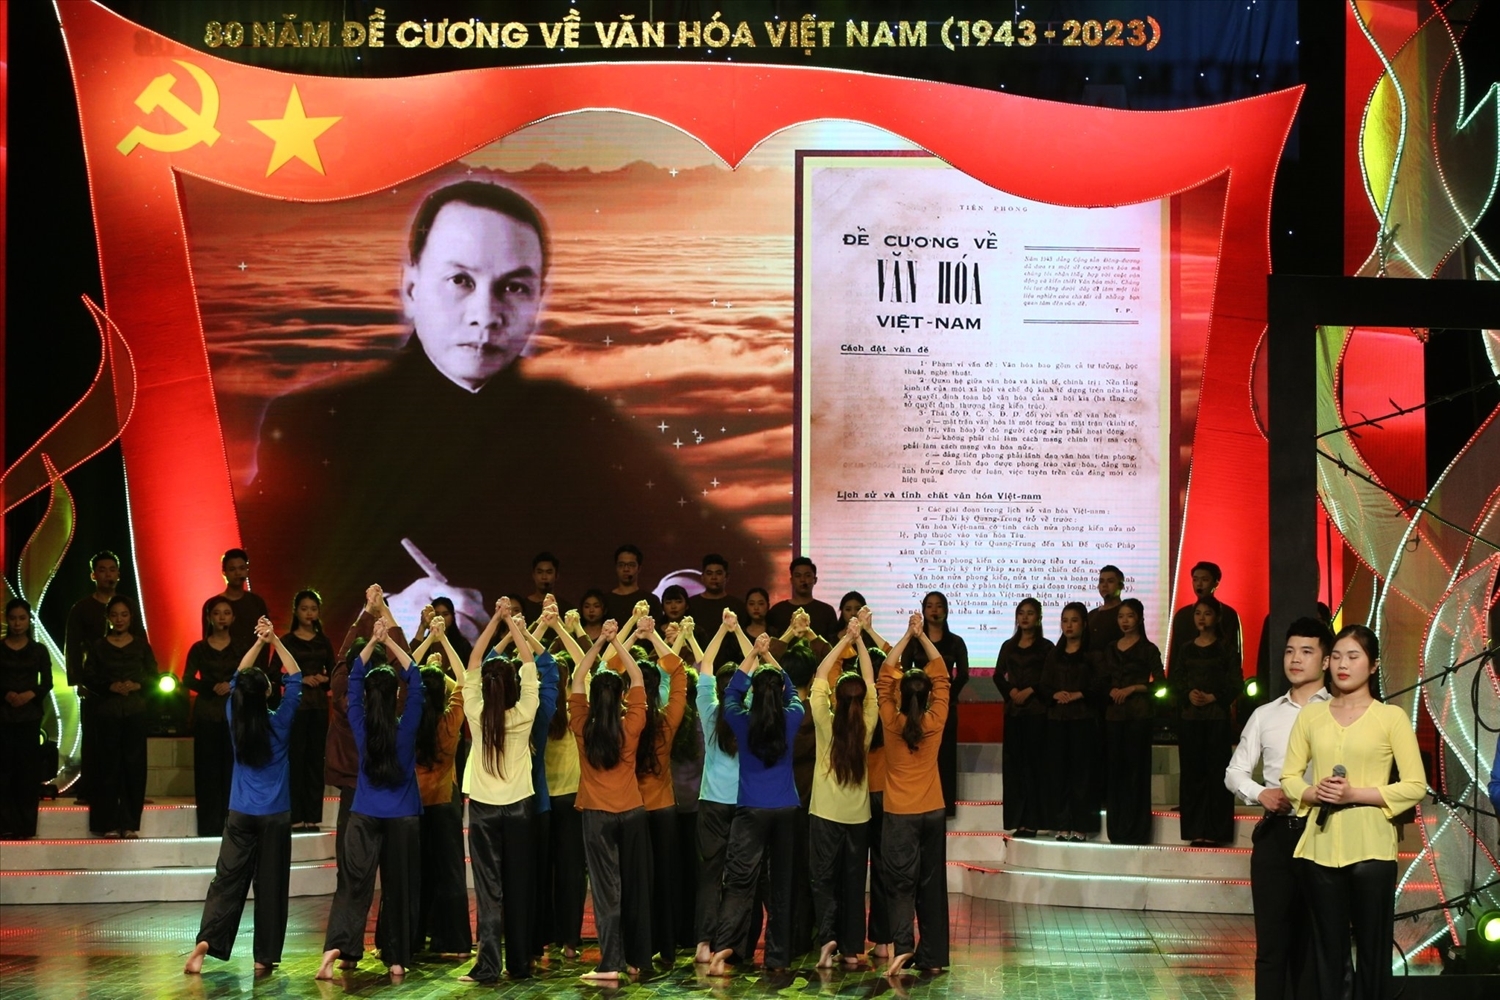 Chương trình nghệ thuật đặc biệt chào mừng Kỷ niệm 80 năm ra đời Đề cương về văn hóa Việt Nam 5